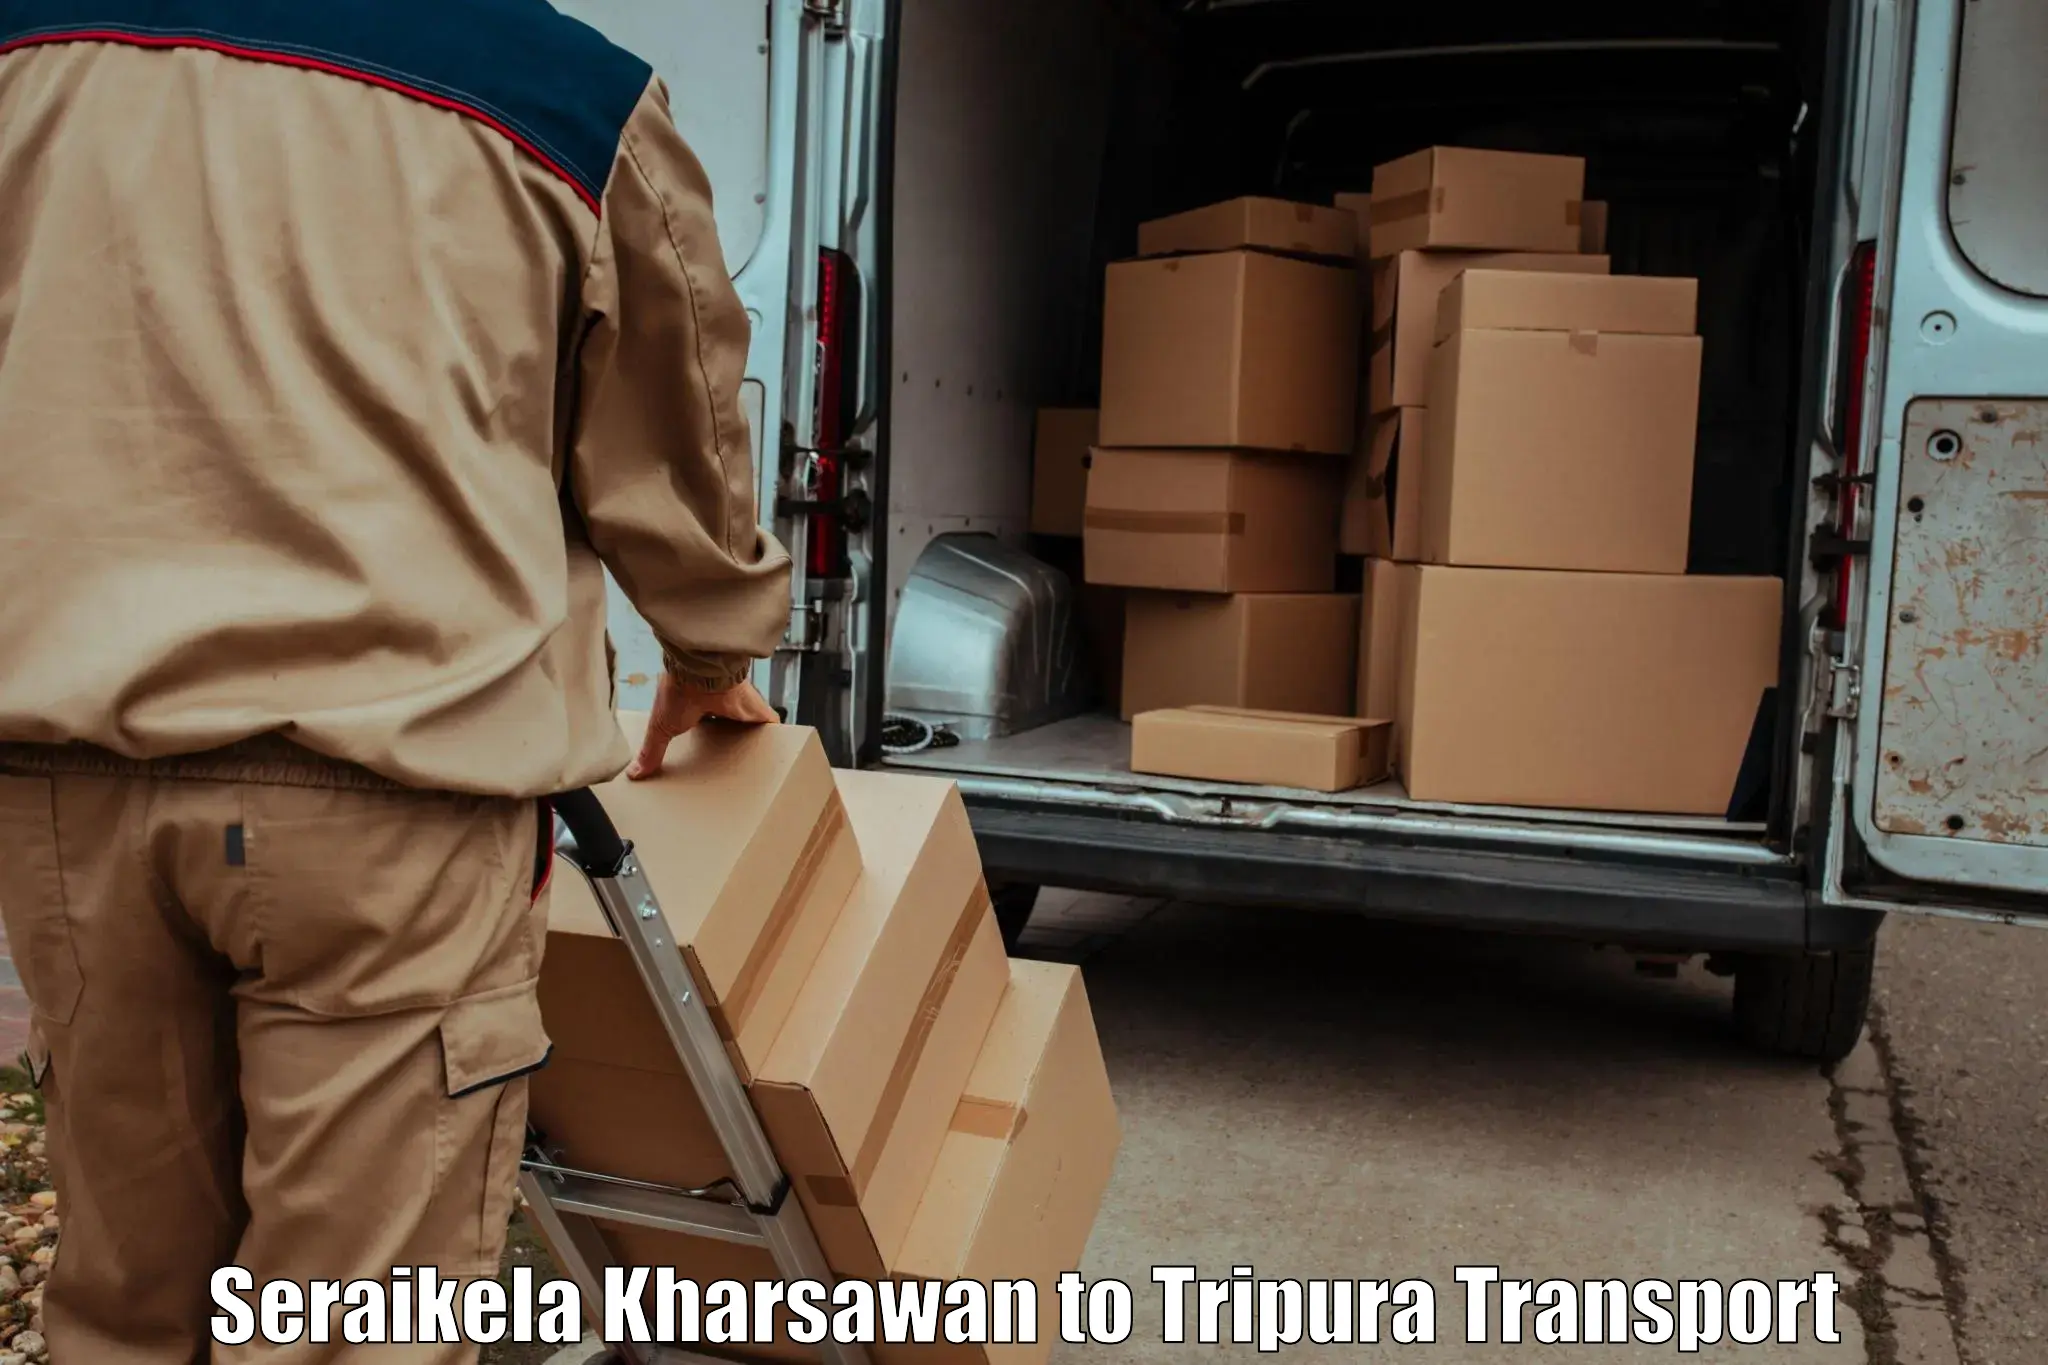 Daily transport service Seraikela Kharsawan to Manughat